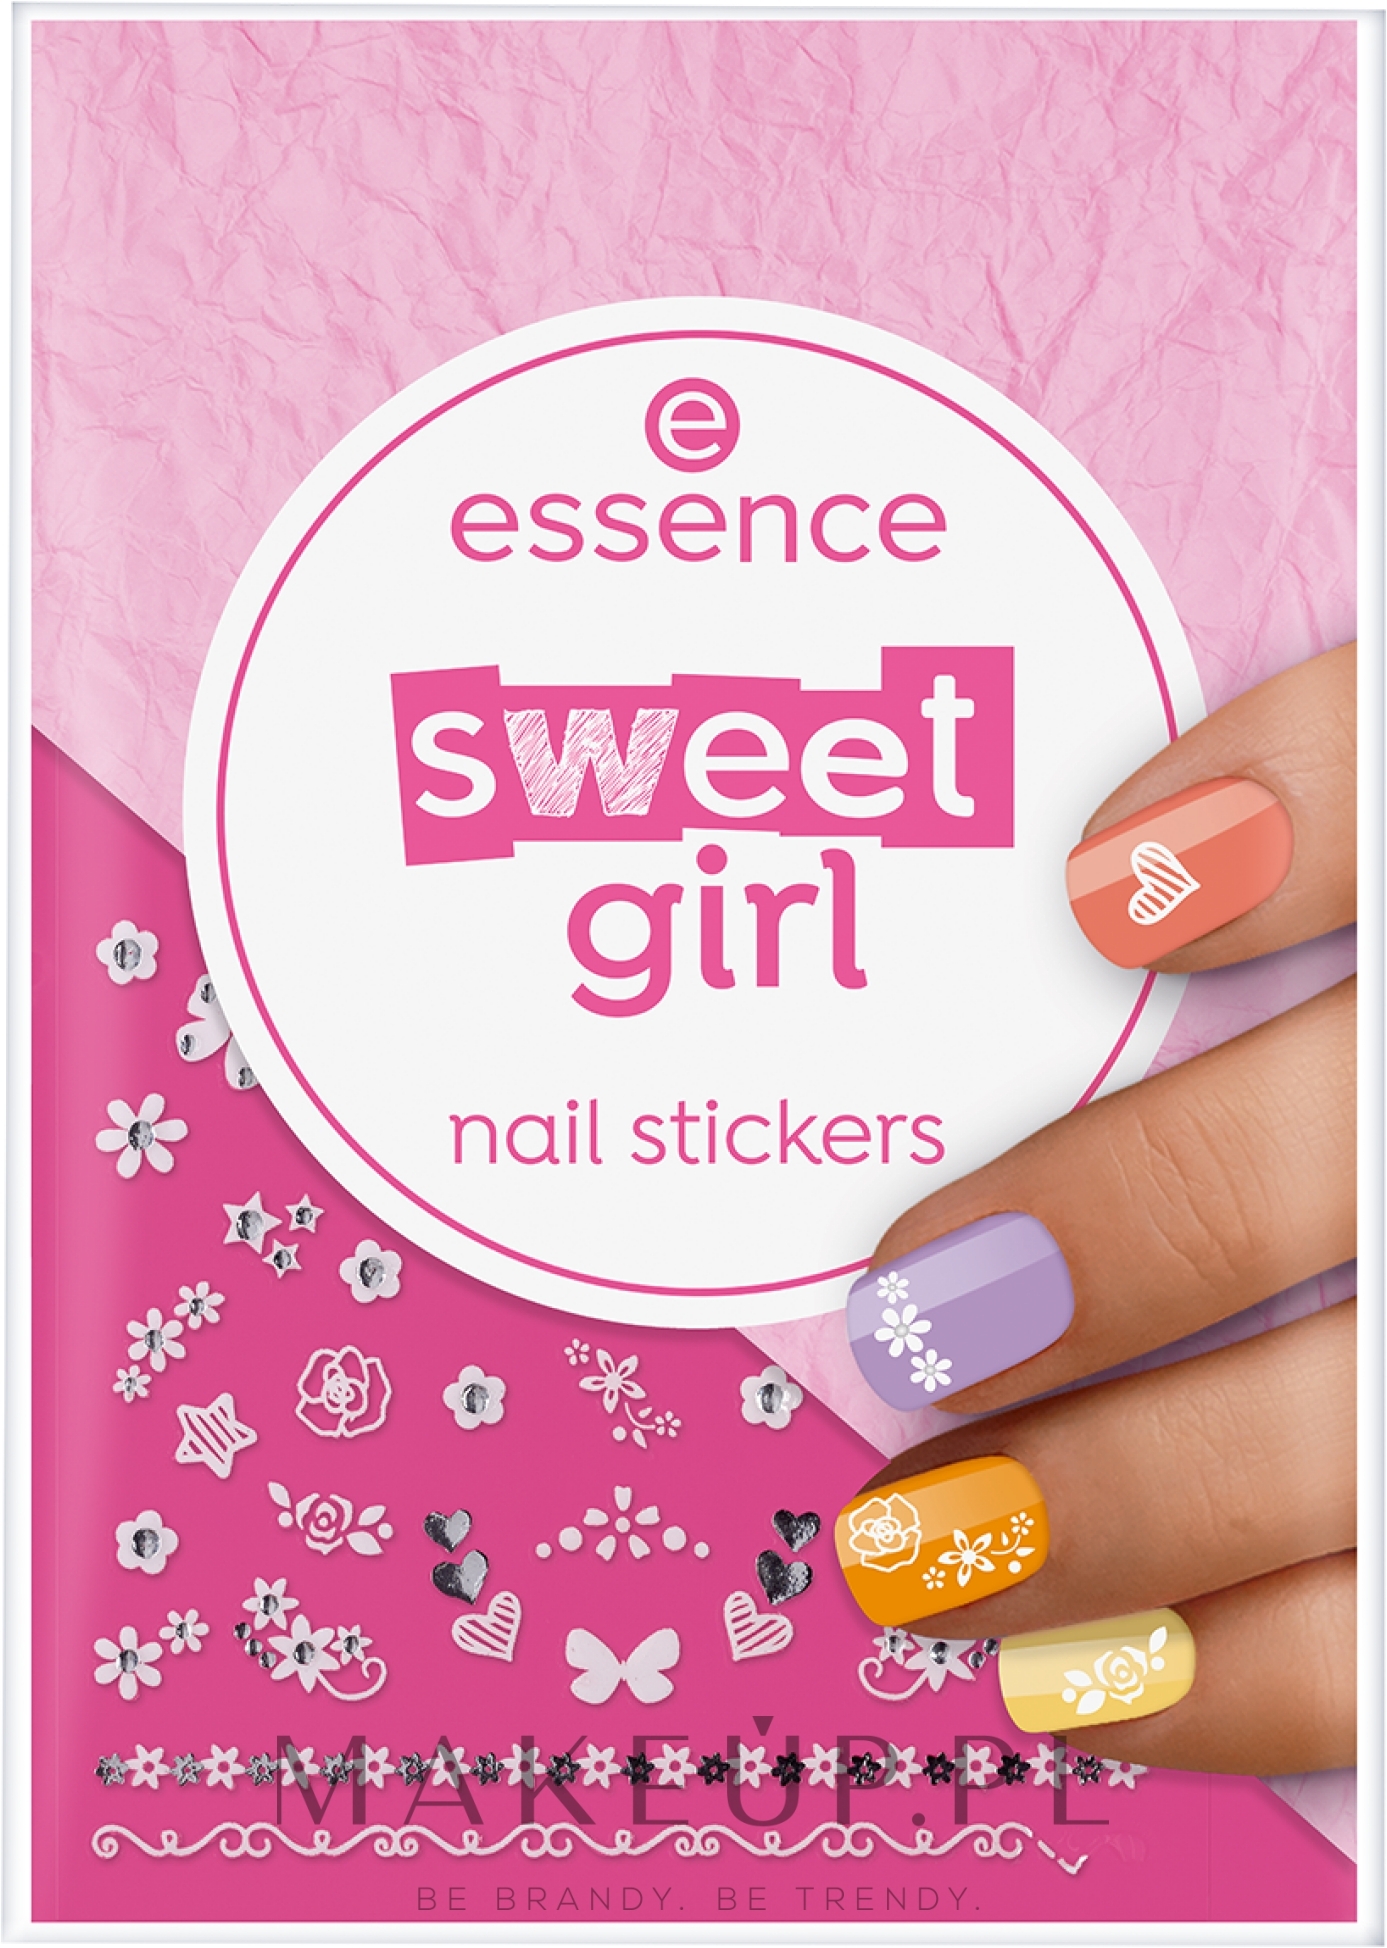 Naklejki na paznokcie - Essence Sweet Girl Nail Stickers — Zdjęcie 44 szt.